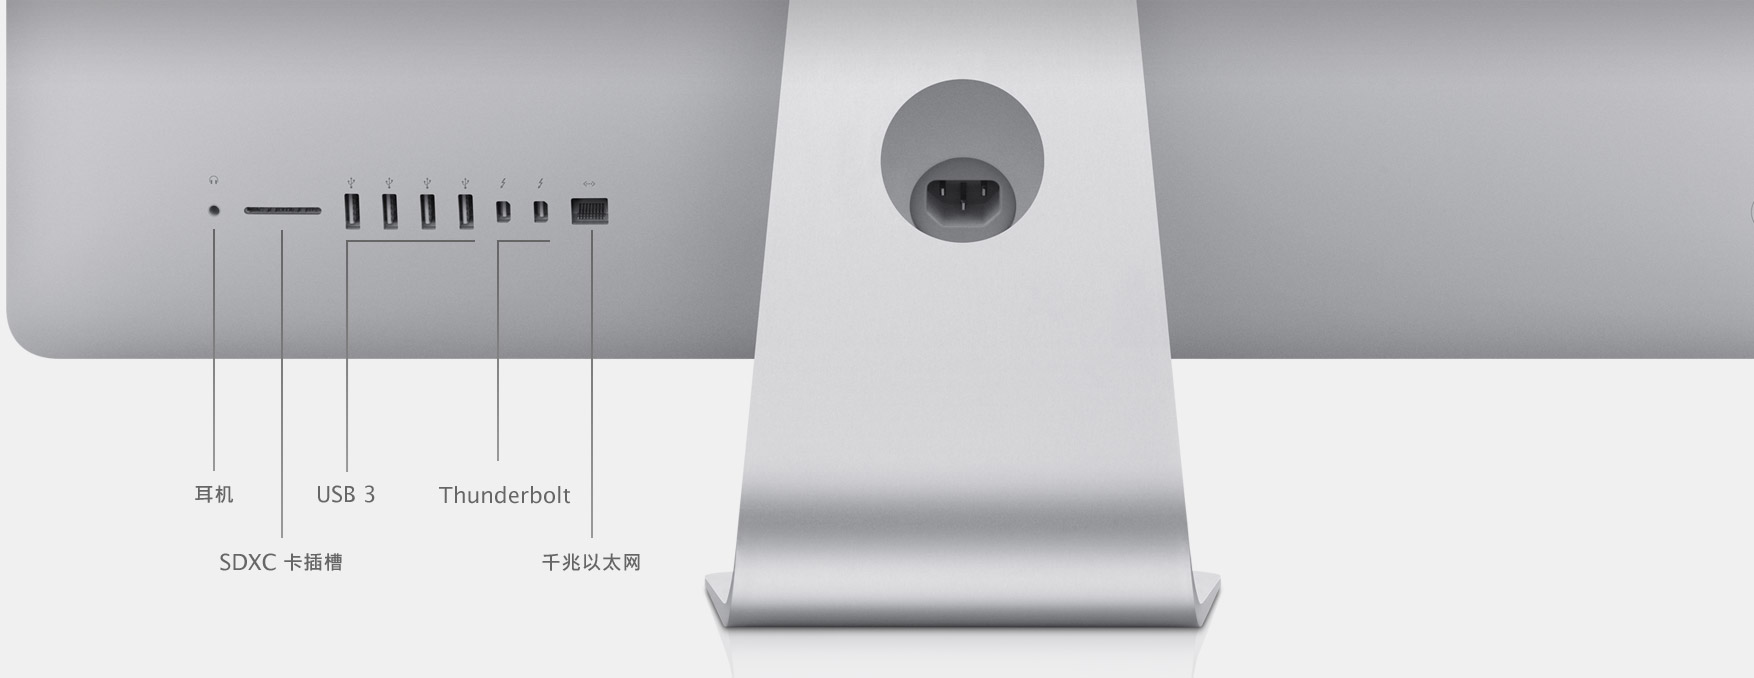 iMac (21.5 英寸, 2013 年中) - 技术规格(中国)